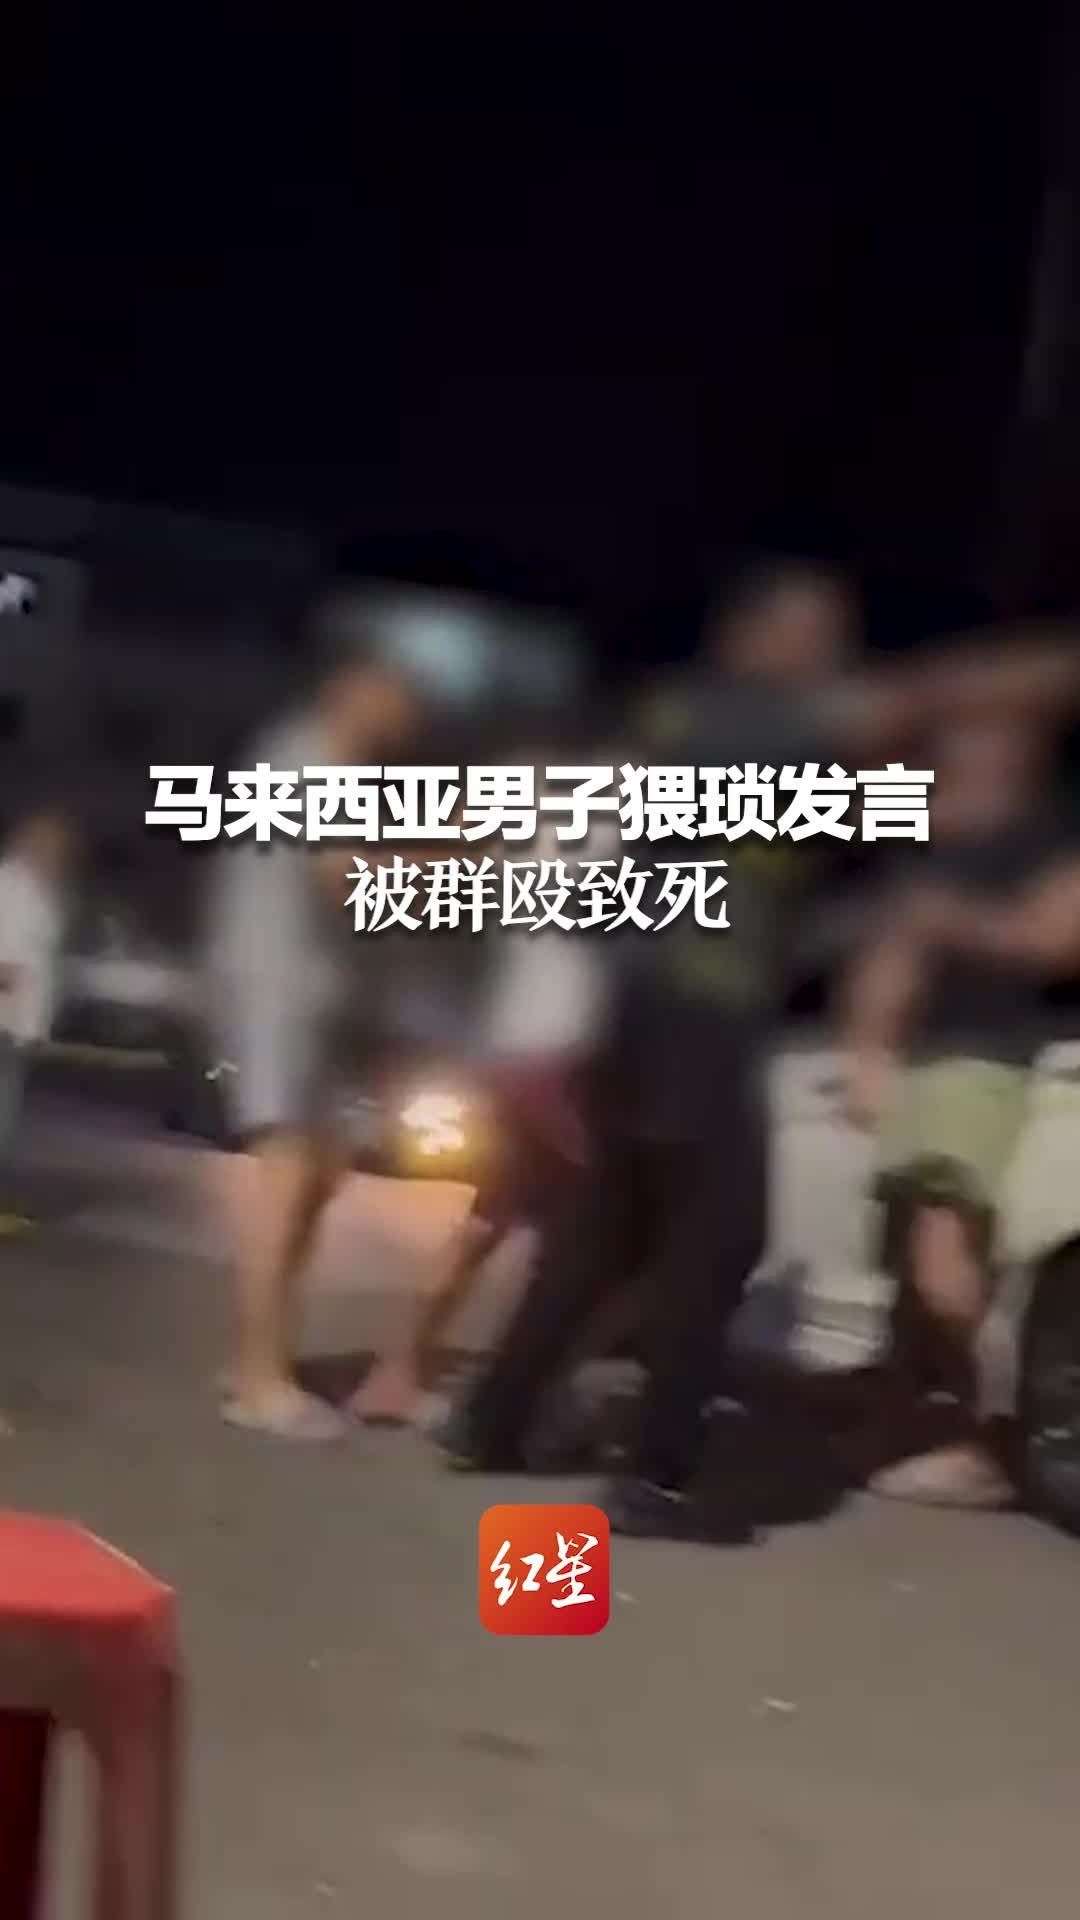 杭州某银行押运员与保安打架 押运公司回应：因扫码起冲突已追责员工 - 封面新闻